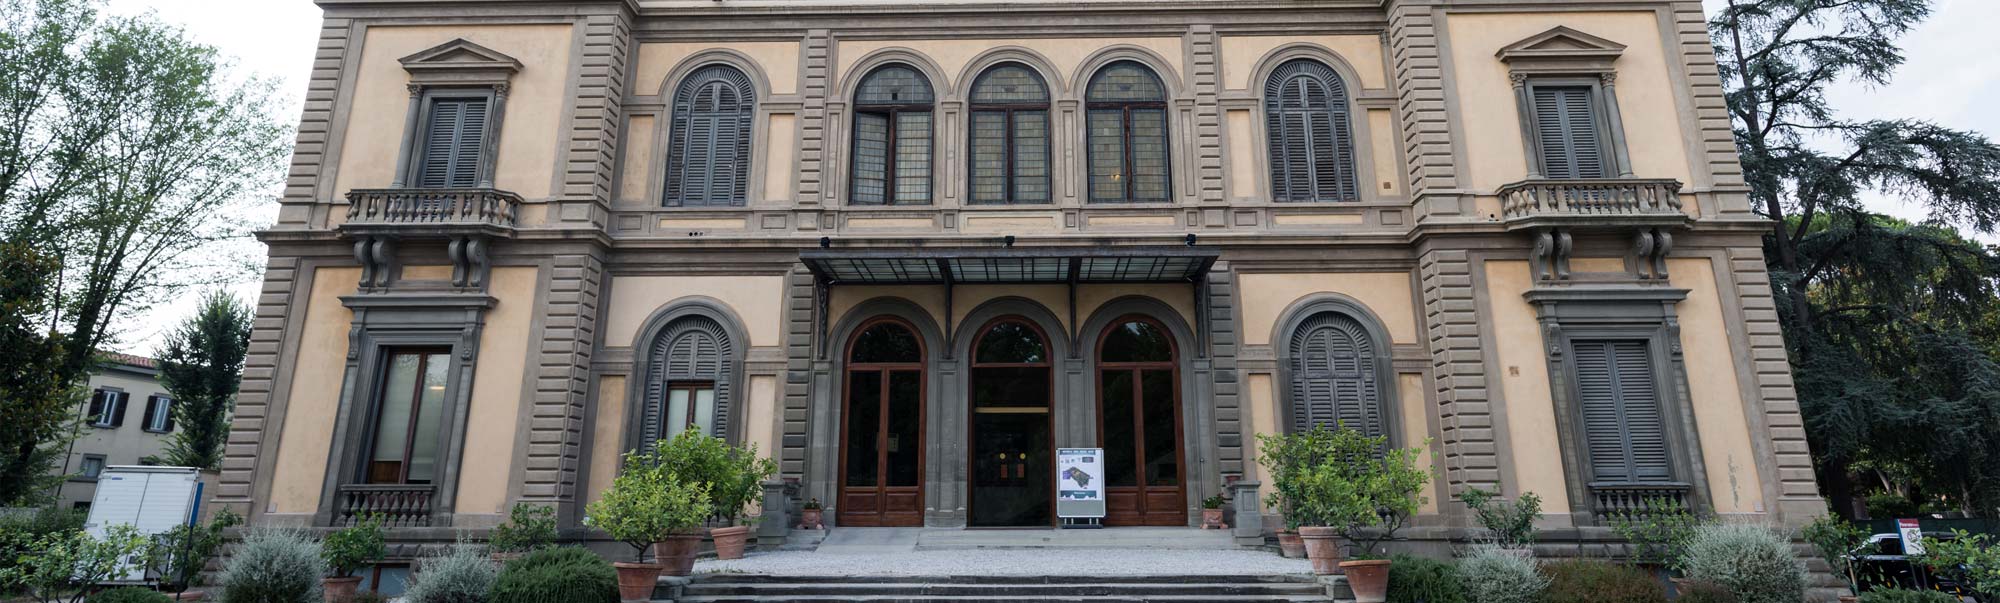 Hotel Palazzo Vecchio | Hotel de tres estrellas centro històrico de Florencia